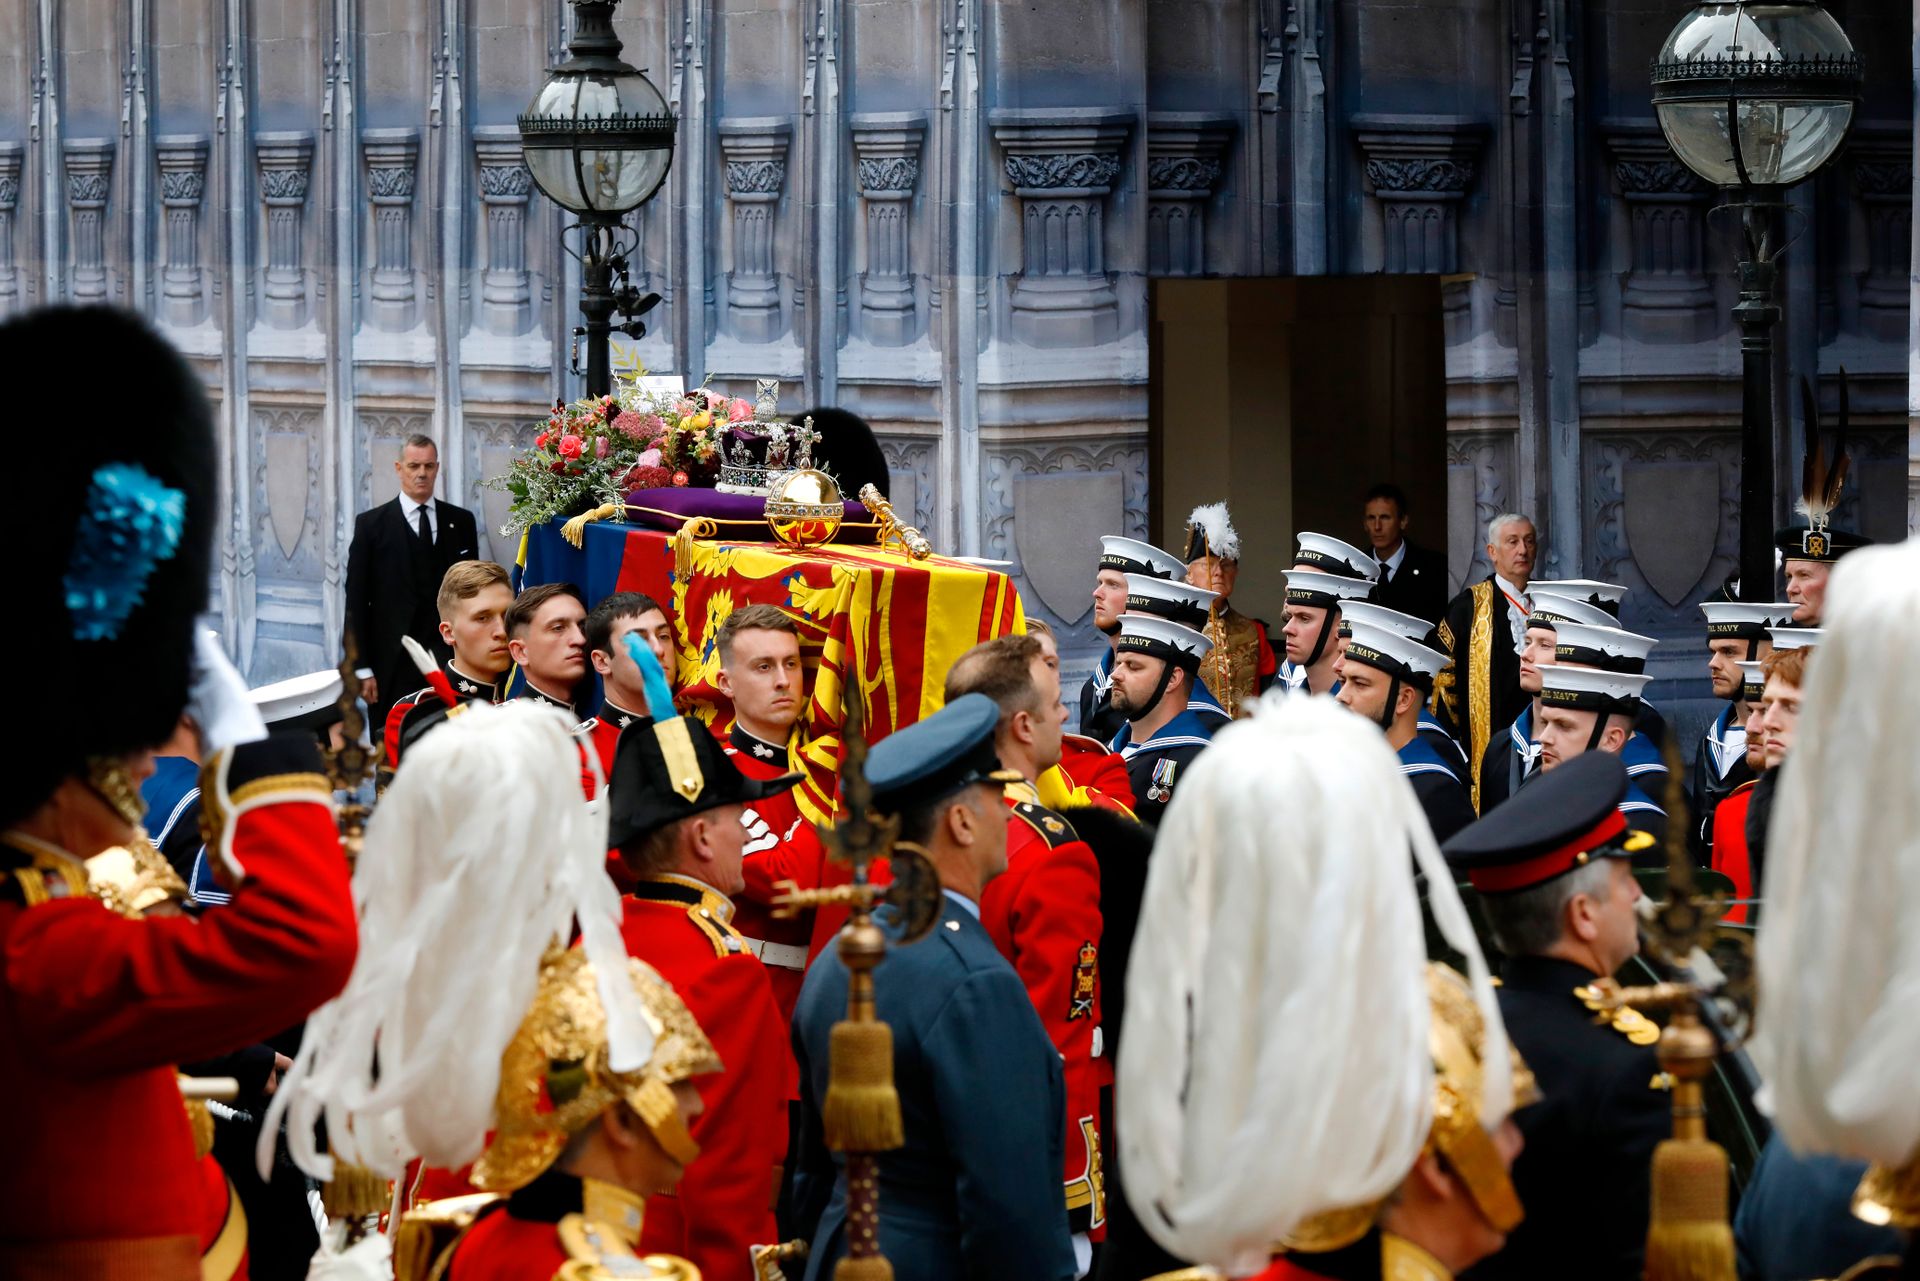 En kiste dekket av et flagg bæres forbi en vegg i stein med utskjæringer på, mens mange menn i forskjellige uniformer med medaljer på hilser.